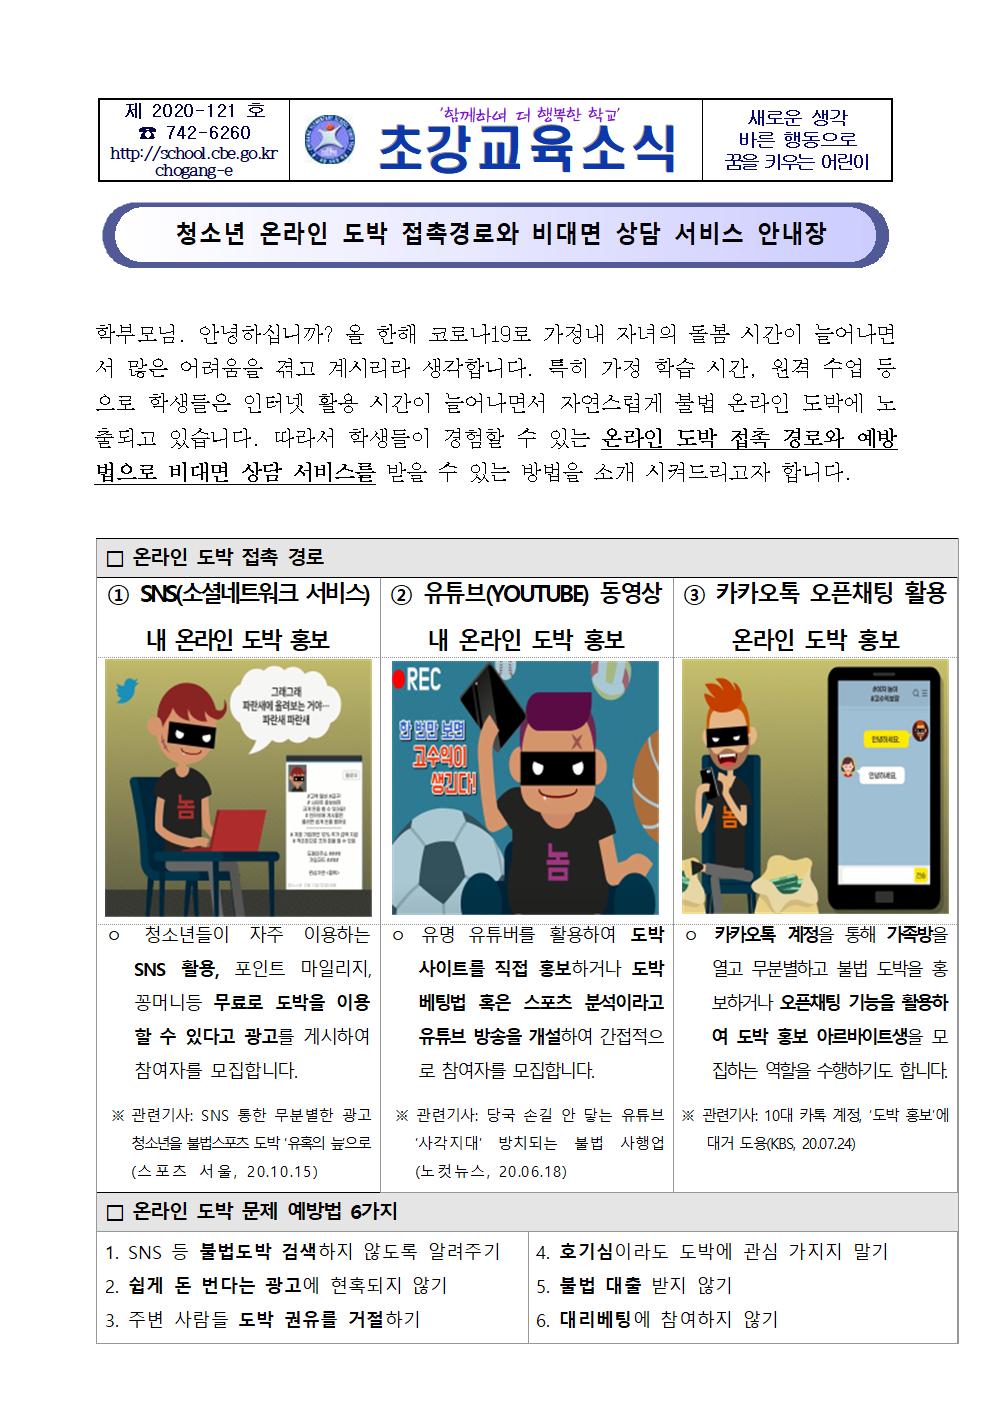 청소년 온라인 도박문제 예방 가정통신문001